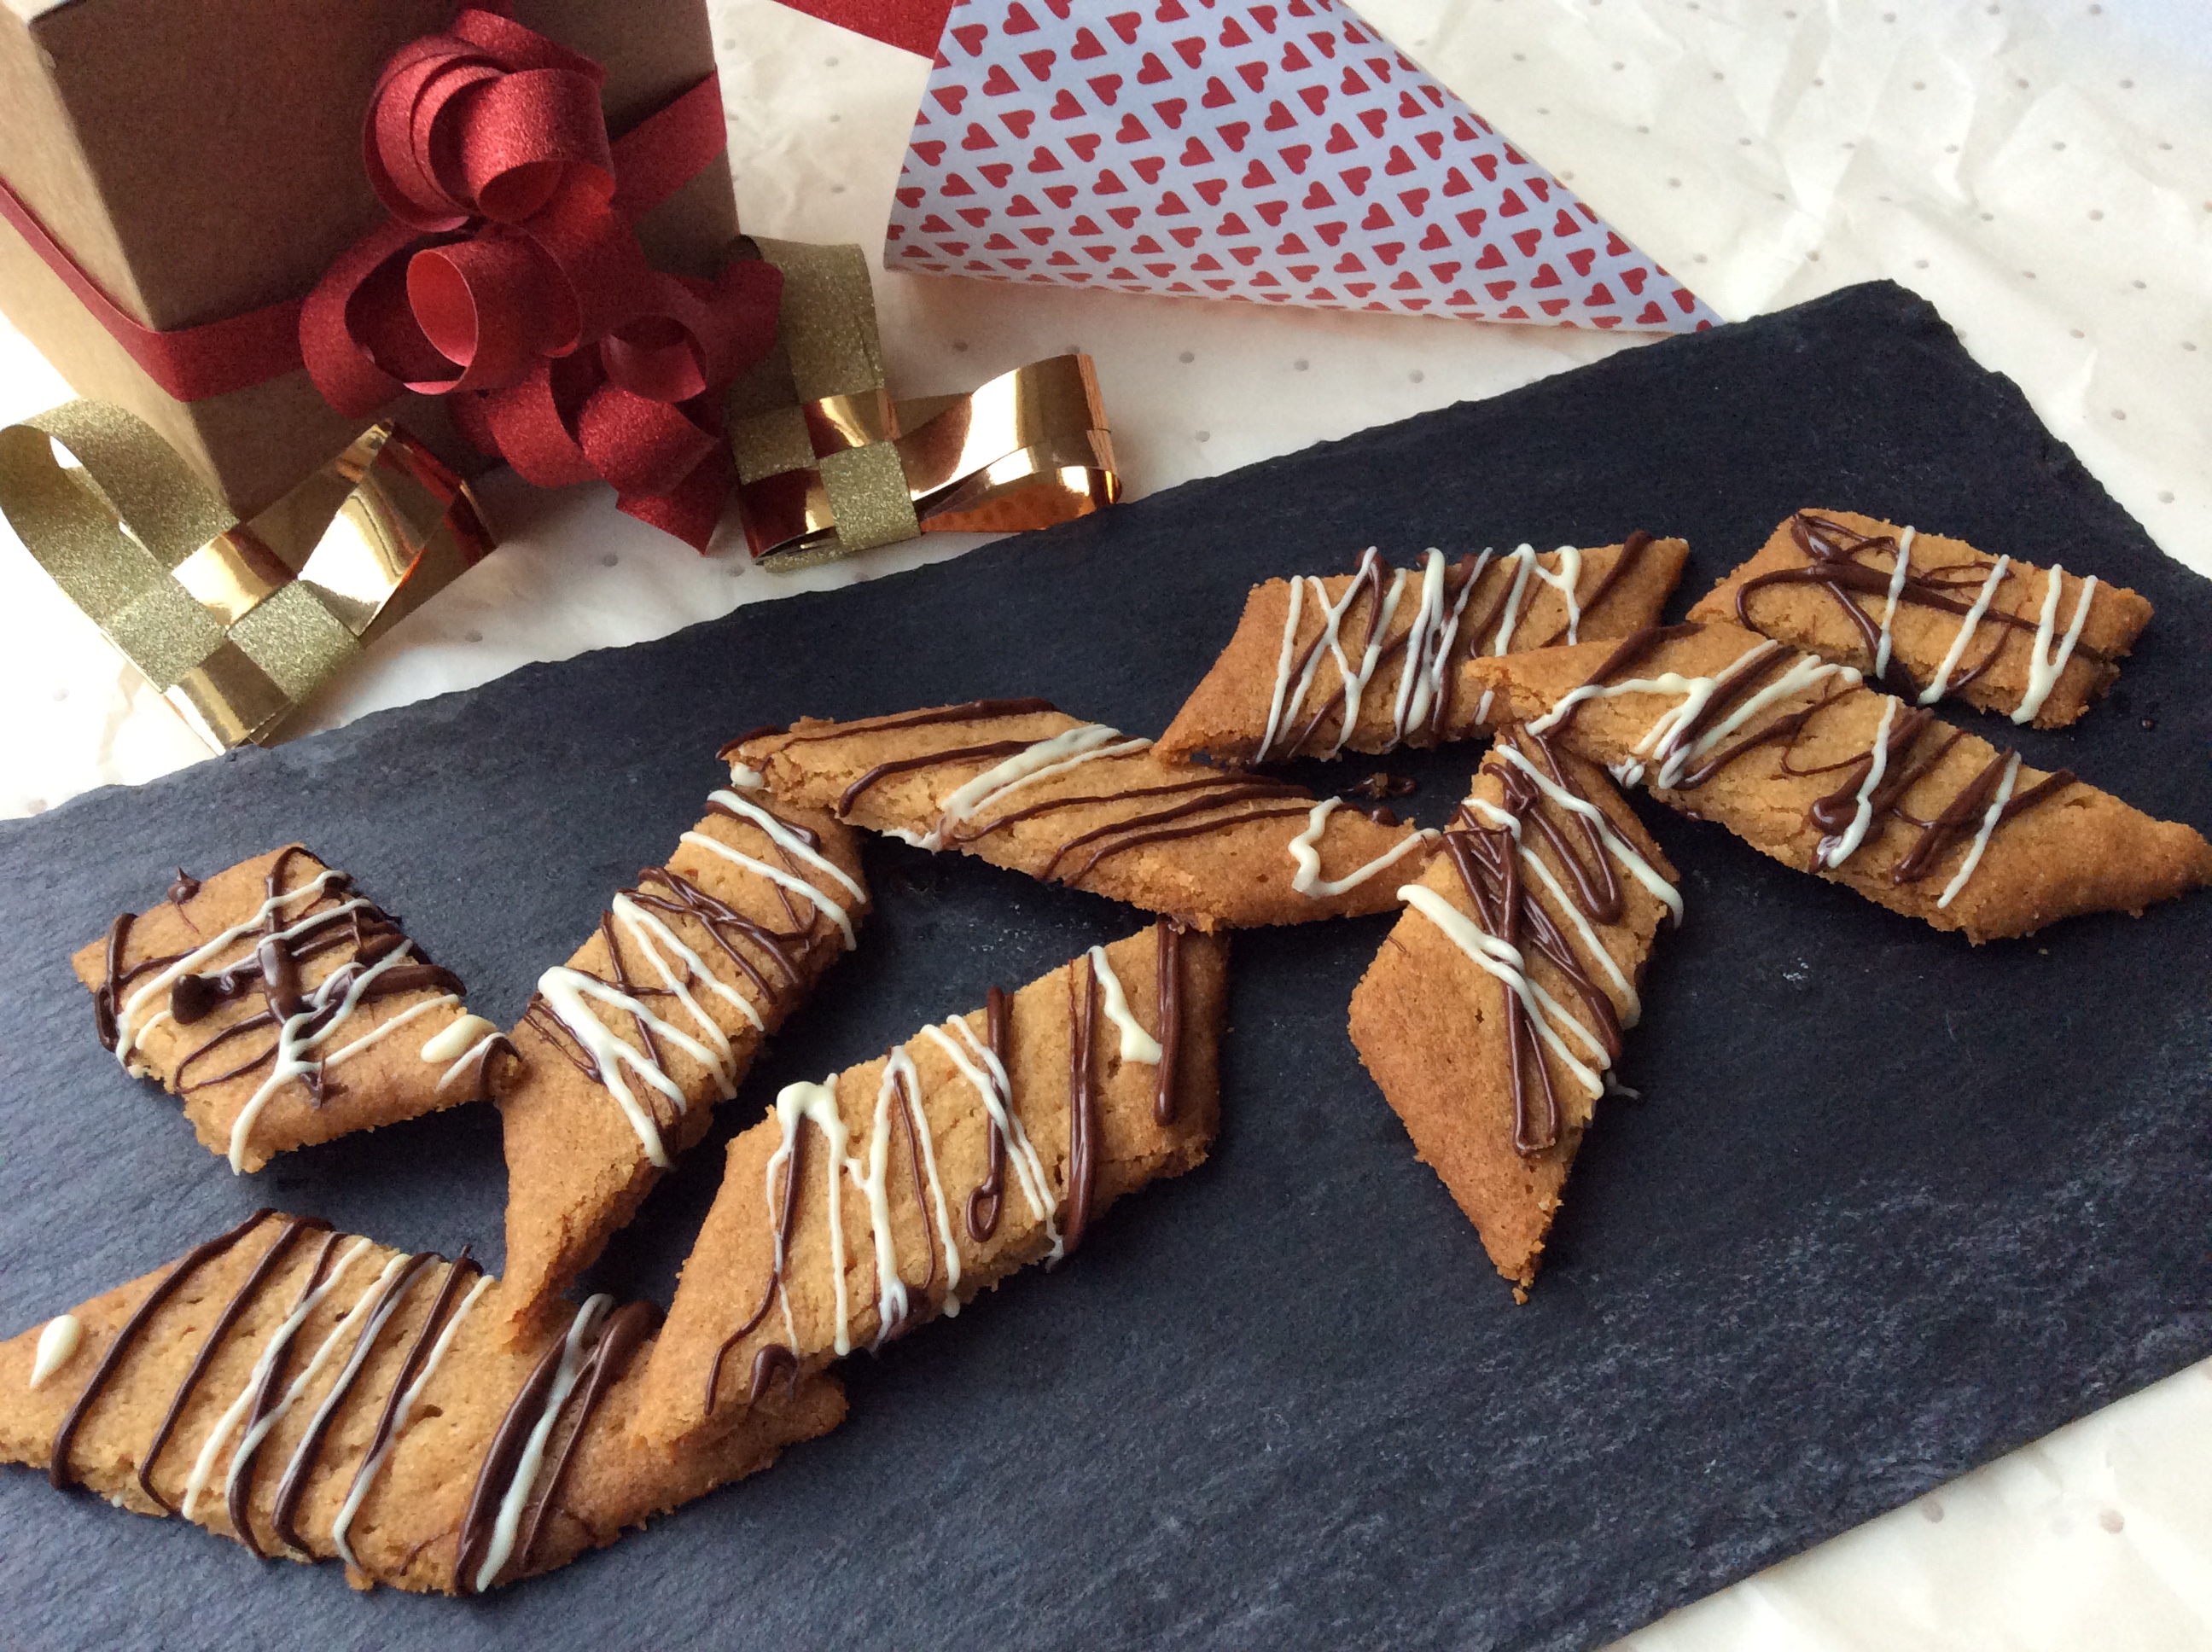 Julebag – glutenfri småkager med sirup